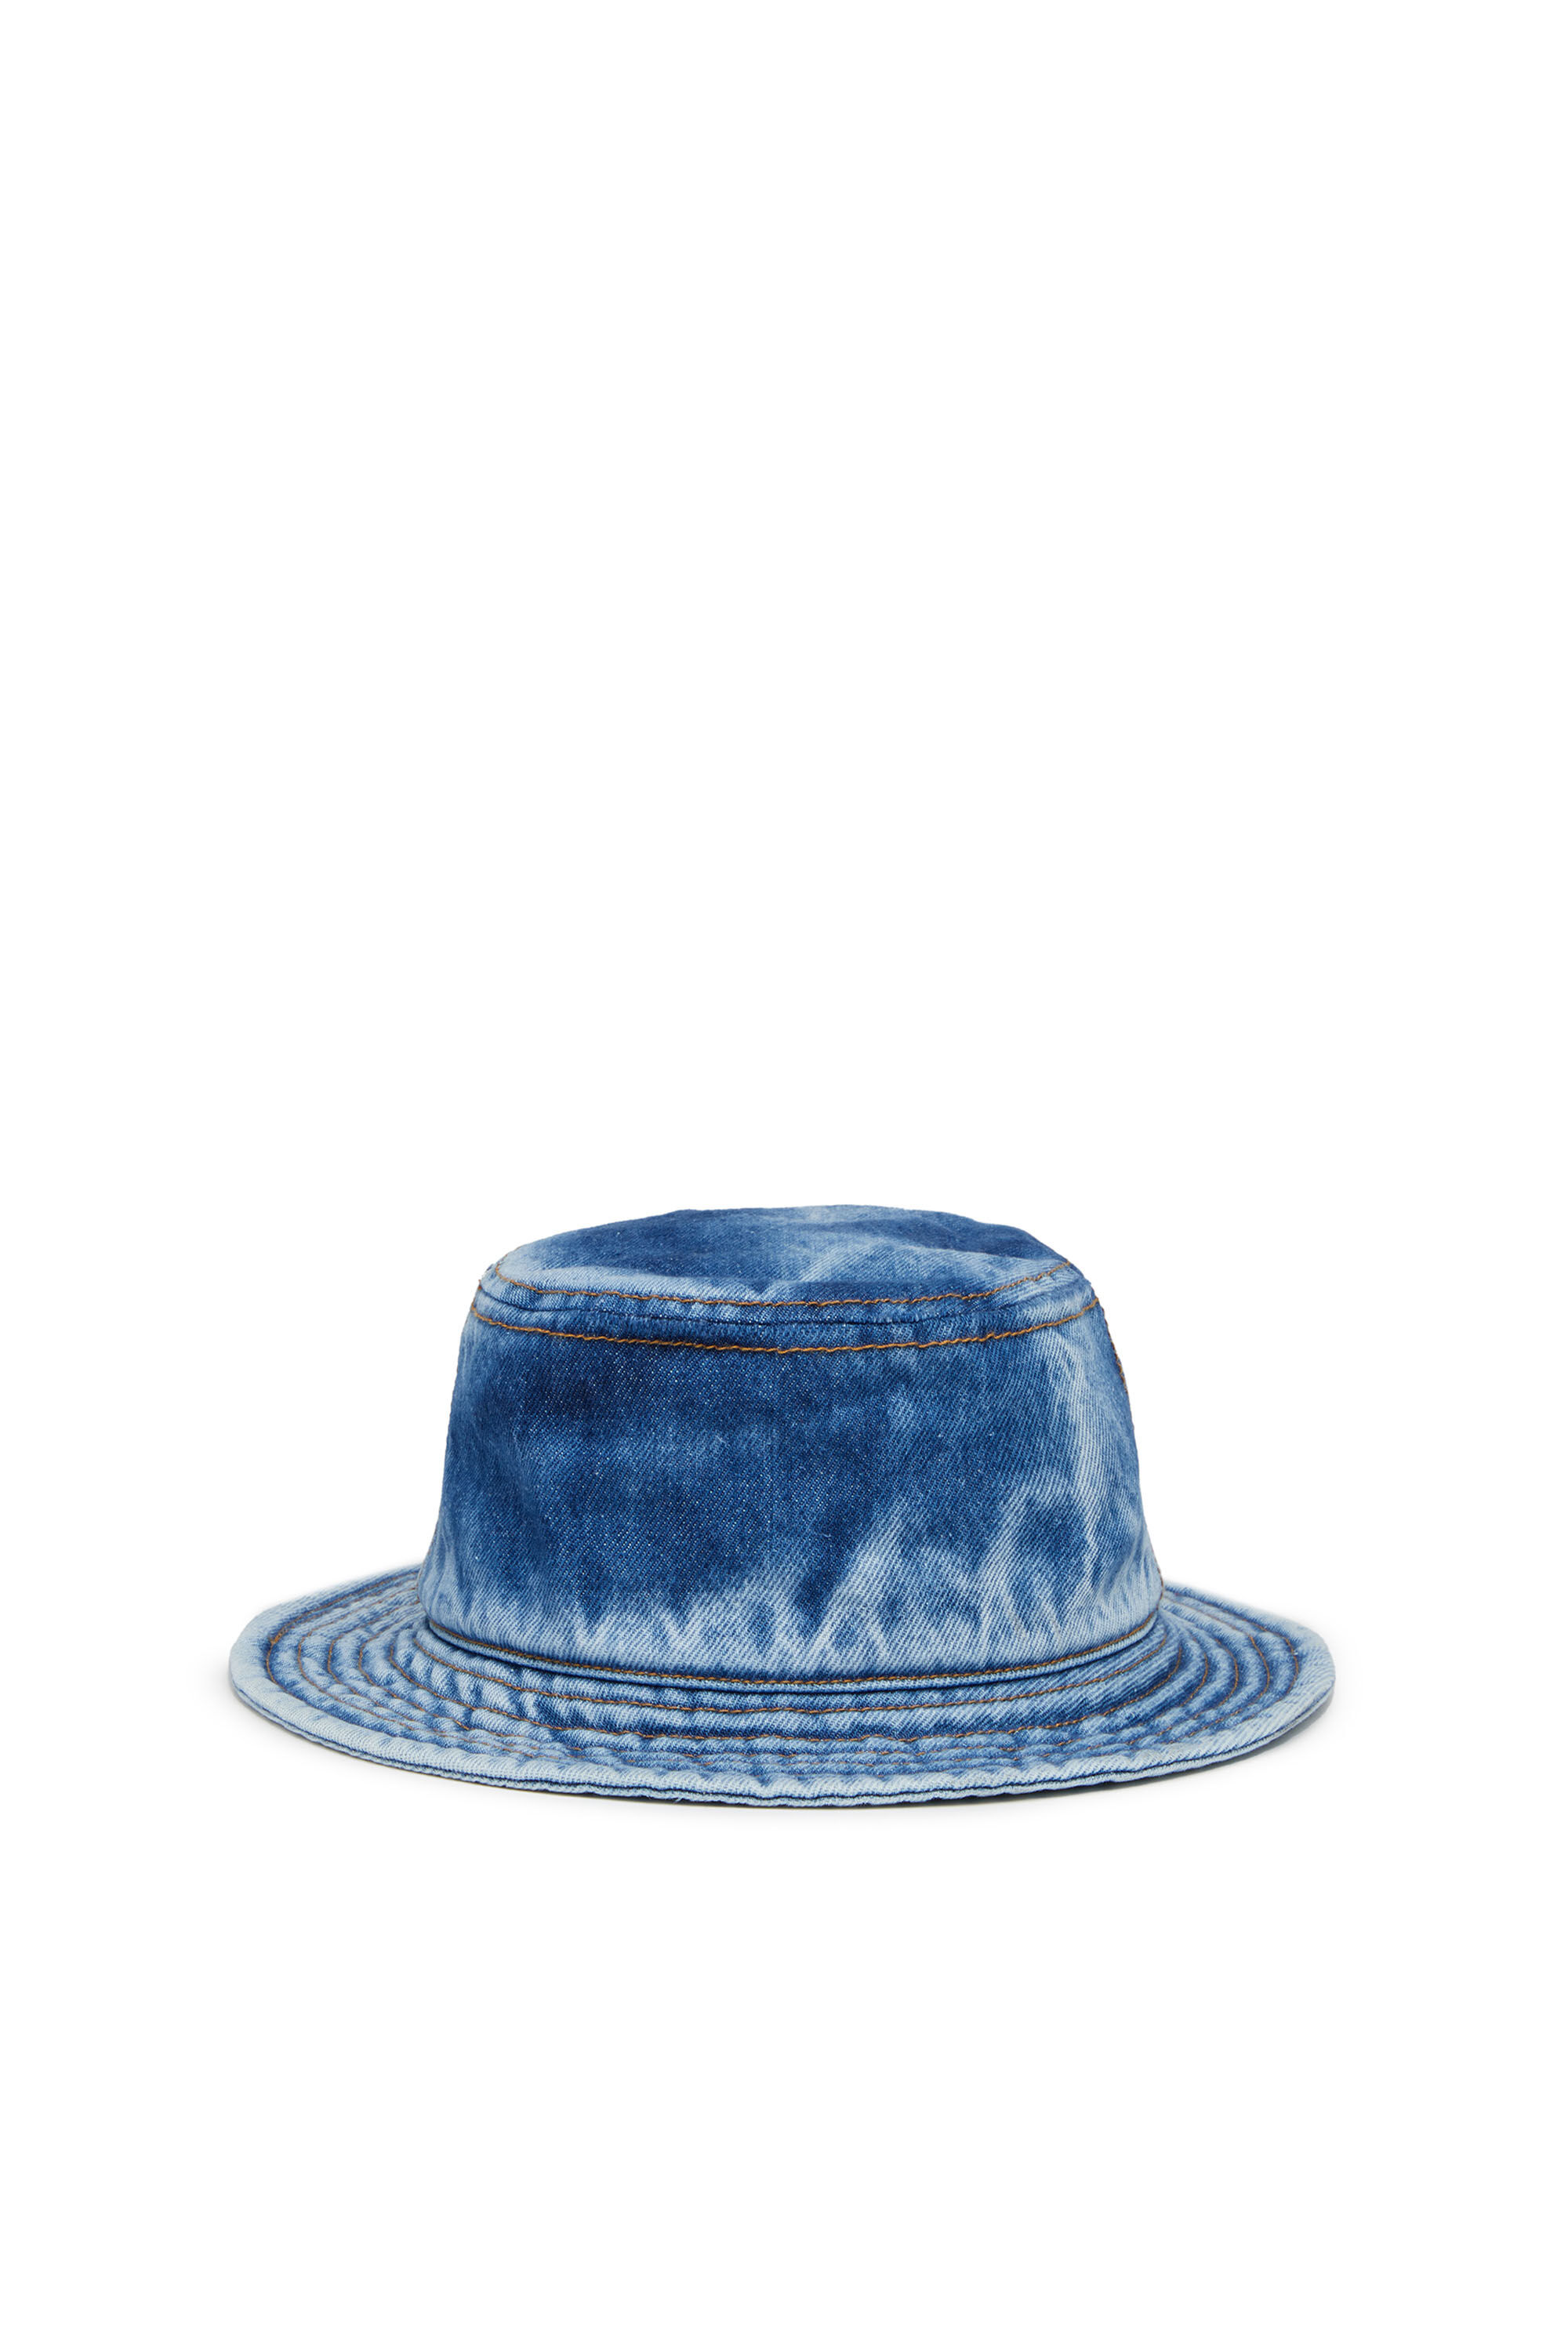 Men's bucket hat, blue denim with a medium wash | Diesel